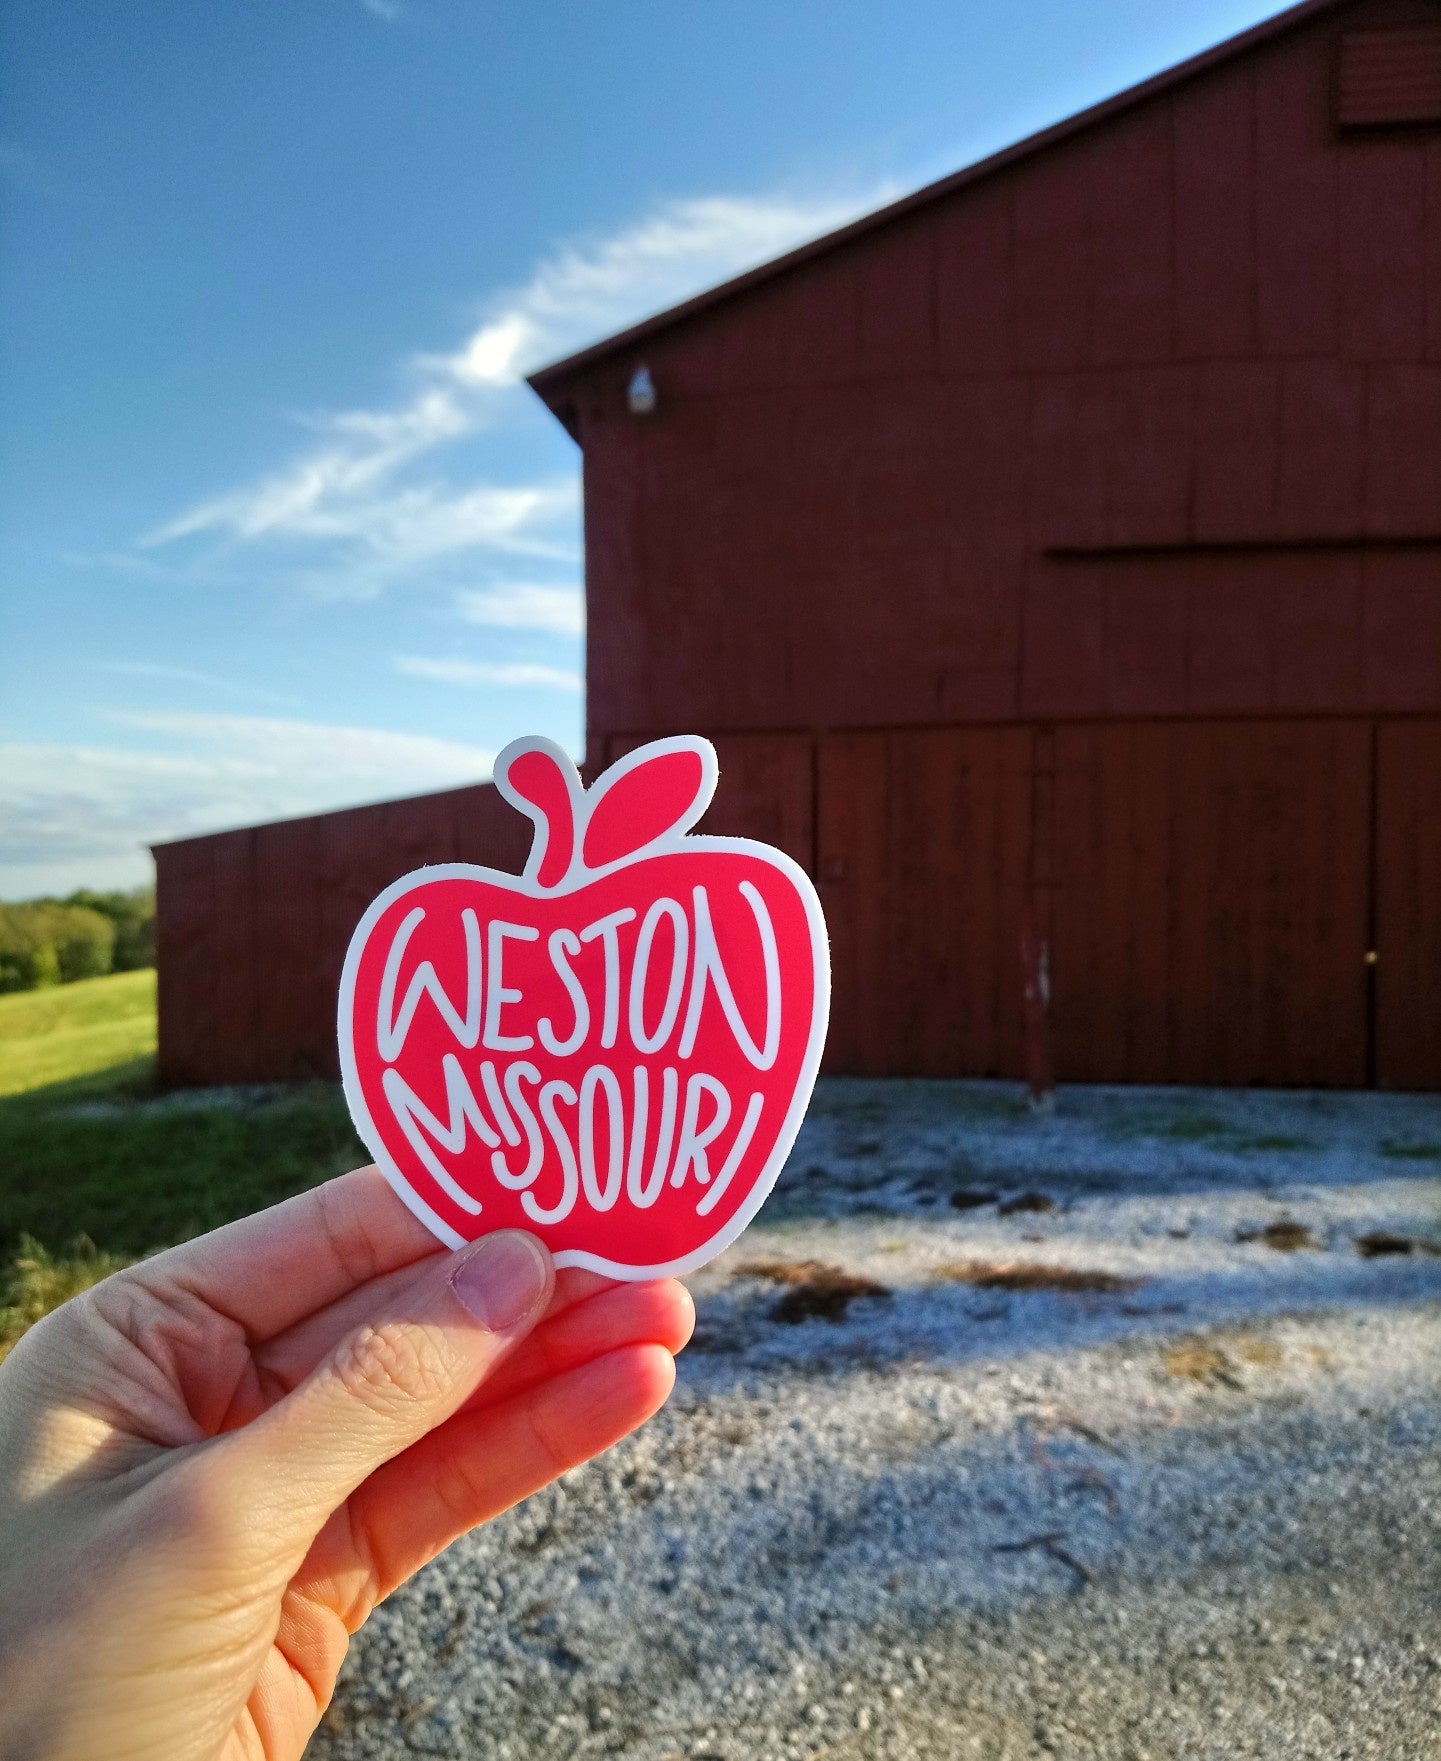 Weston Missouri Apple Red Sticker